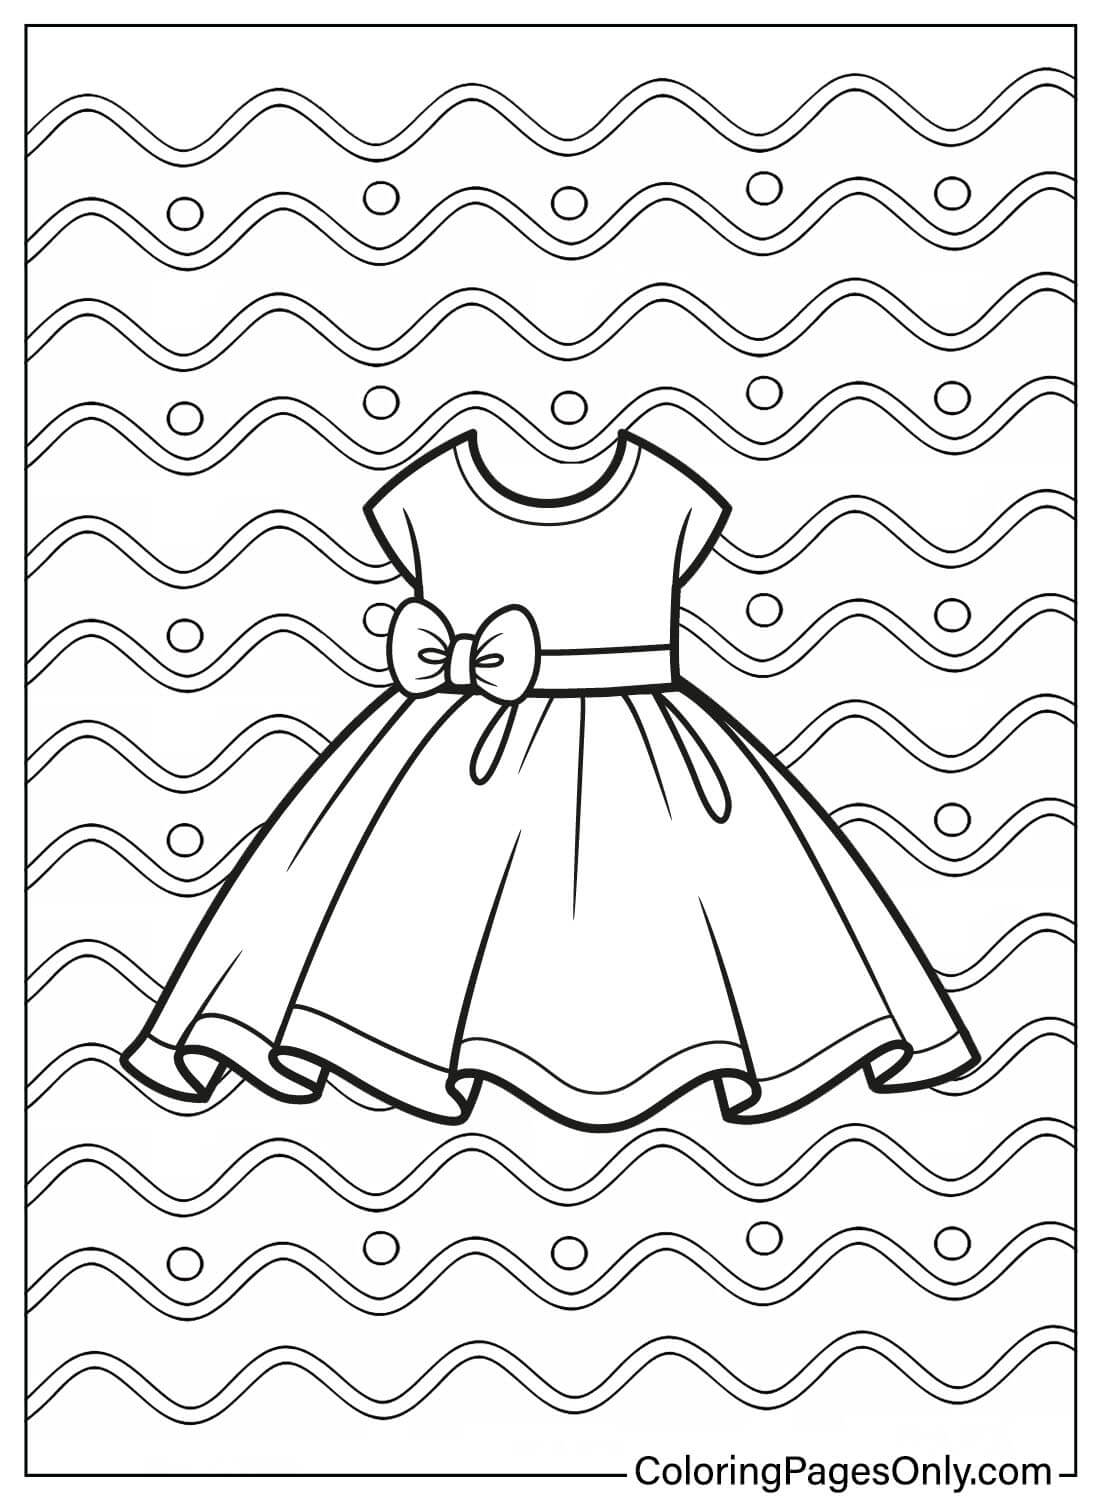 Página para colorear de vestido de bebé para niños de Vestido de bebé